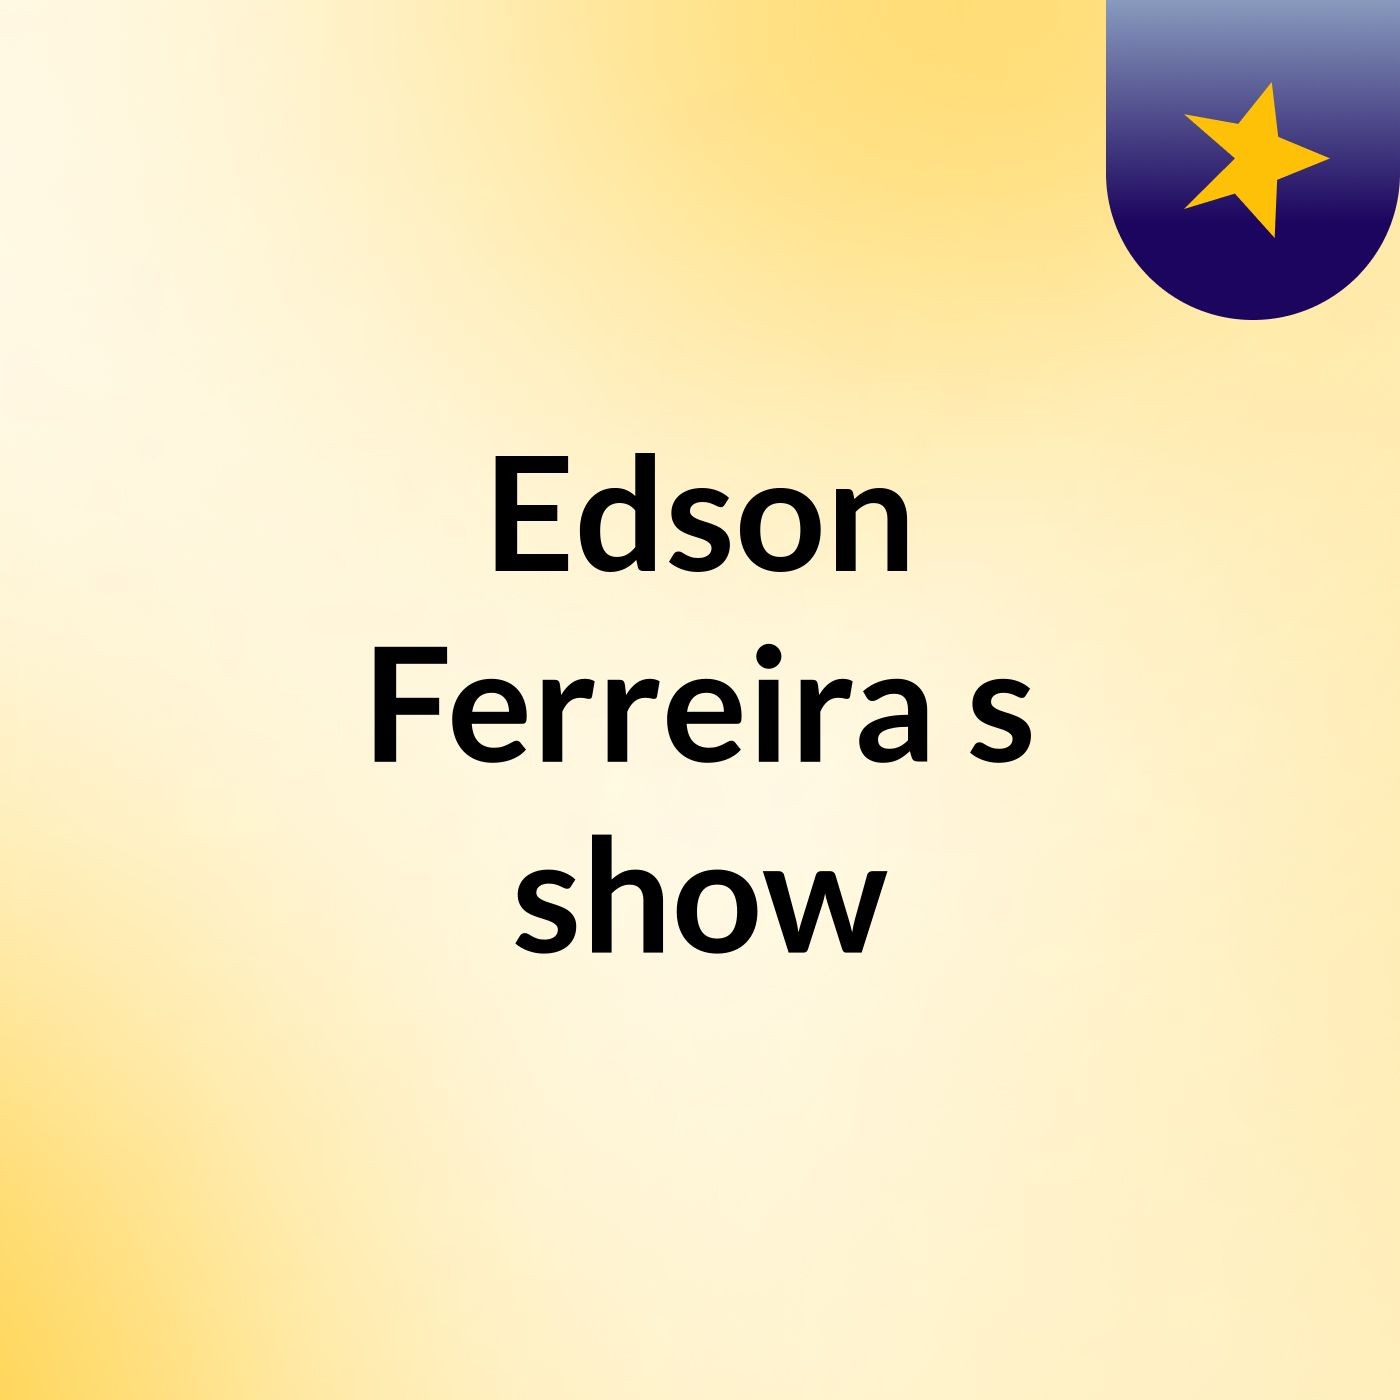 Edson Ferreira's show